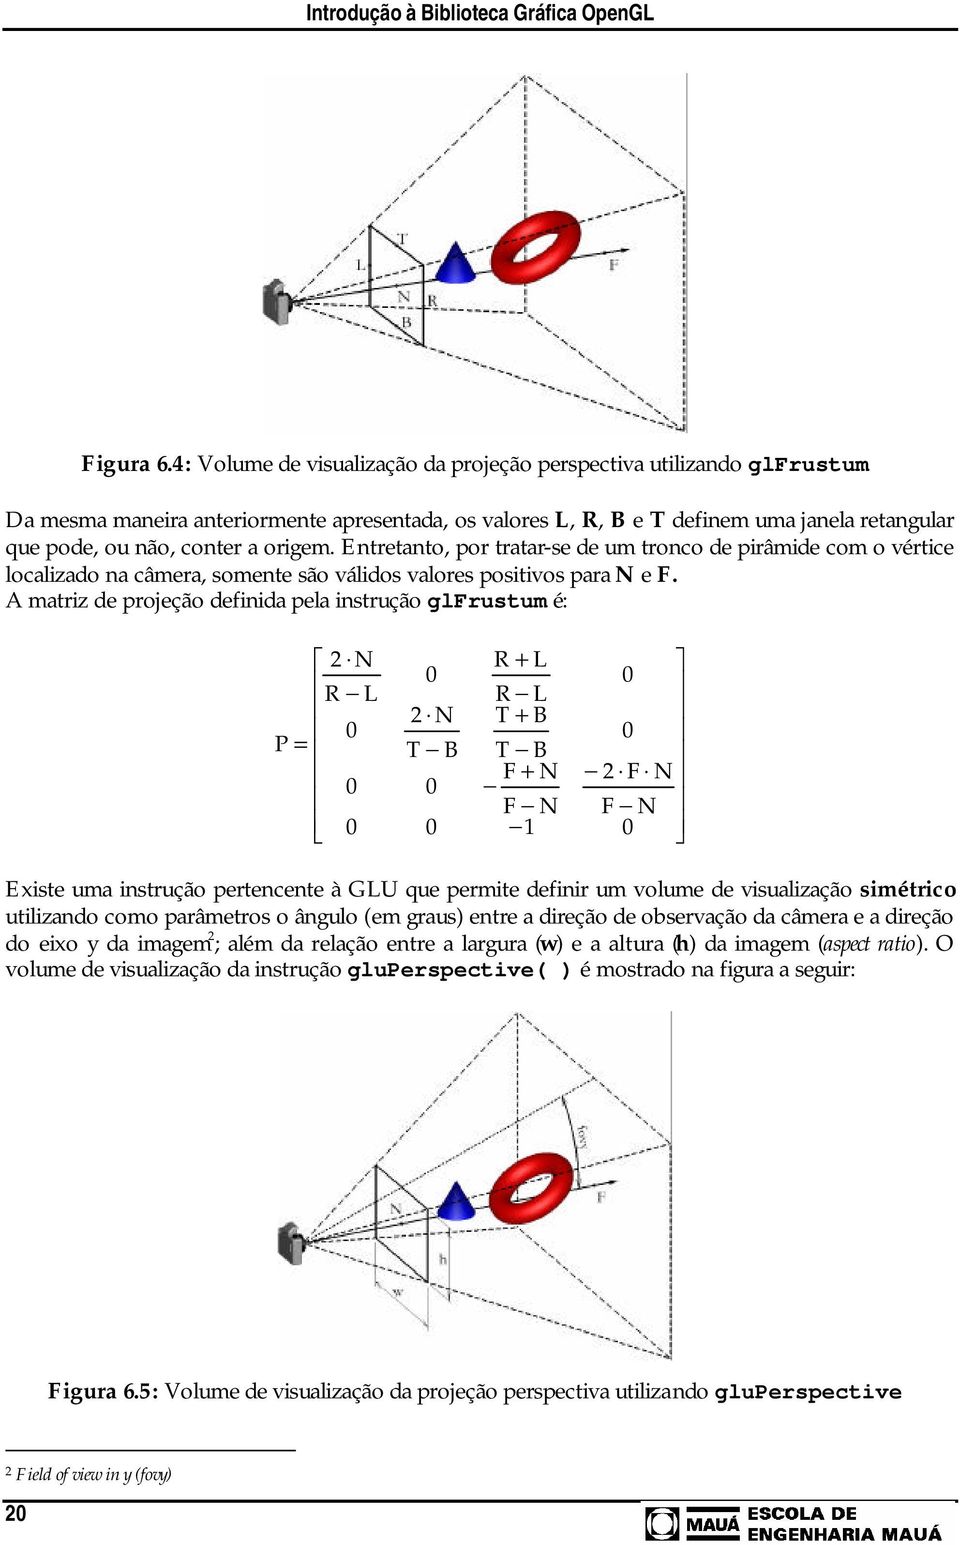 Entretanto, por tratar-se de um tronco de pirâmide com o vértice localizado na câmera, somente são válidos valores positivos para N e F.